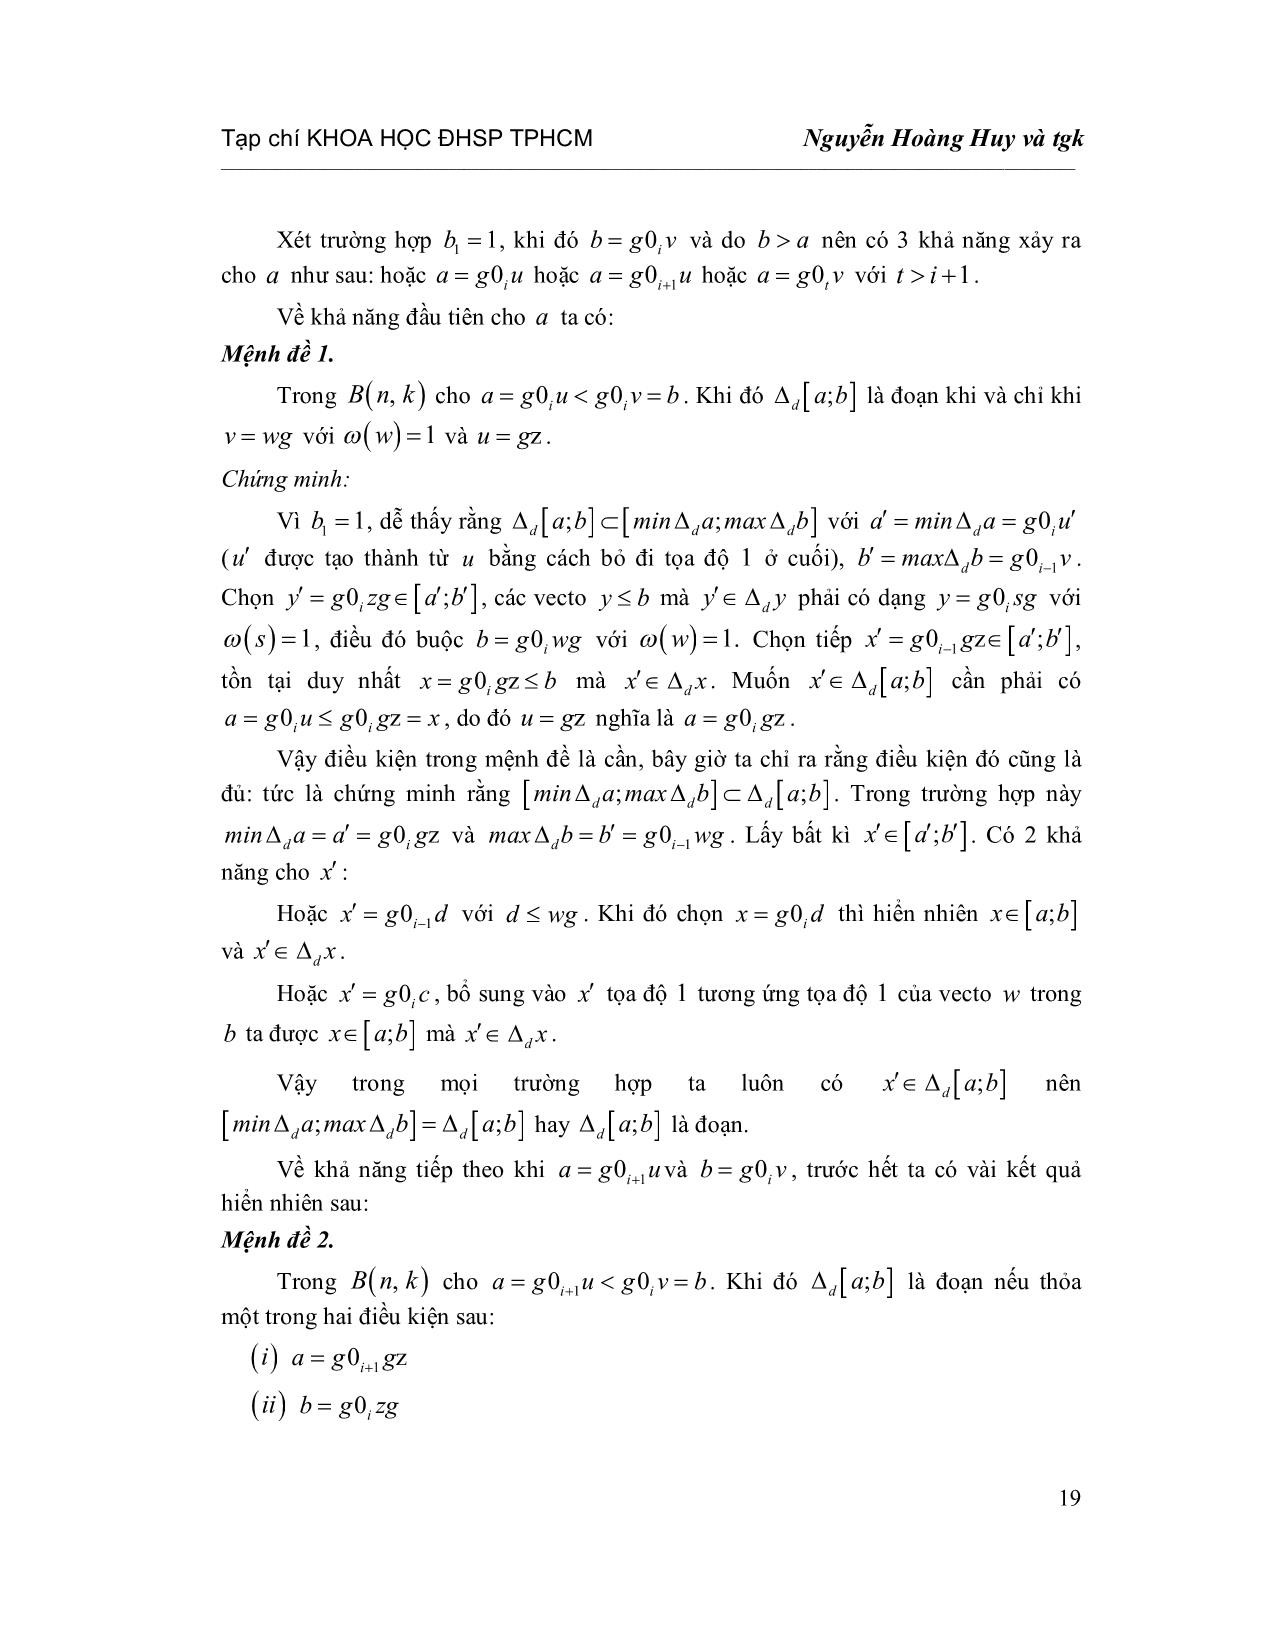 Bóng khuyết của một đoạn trong Poset các Vecto Boole trang 3